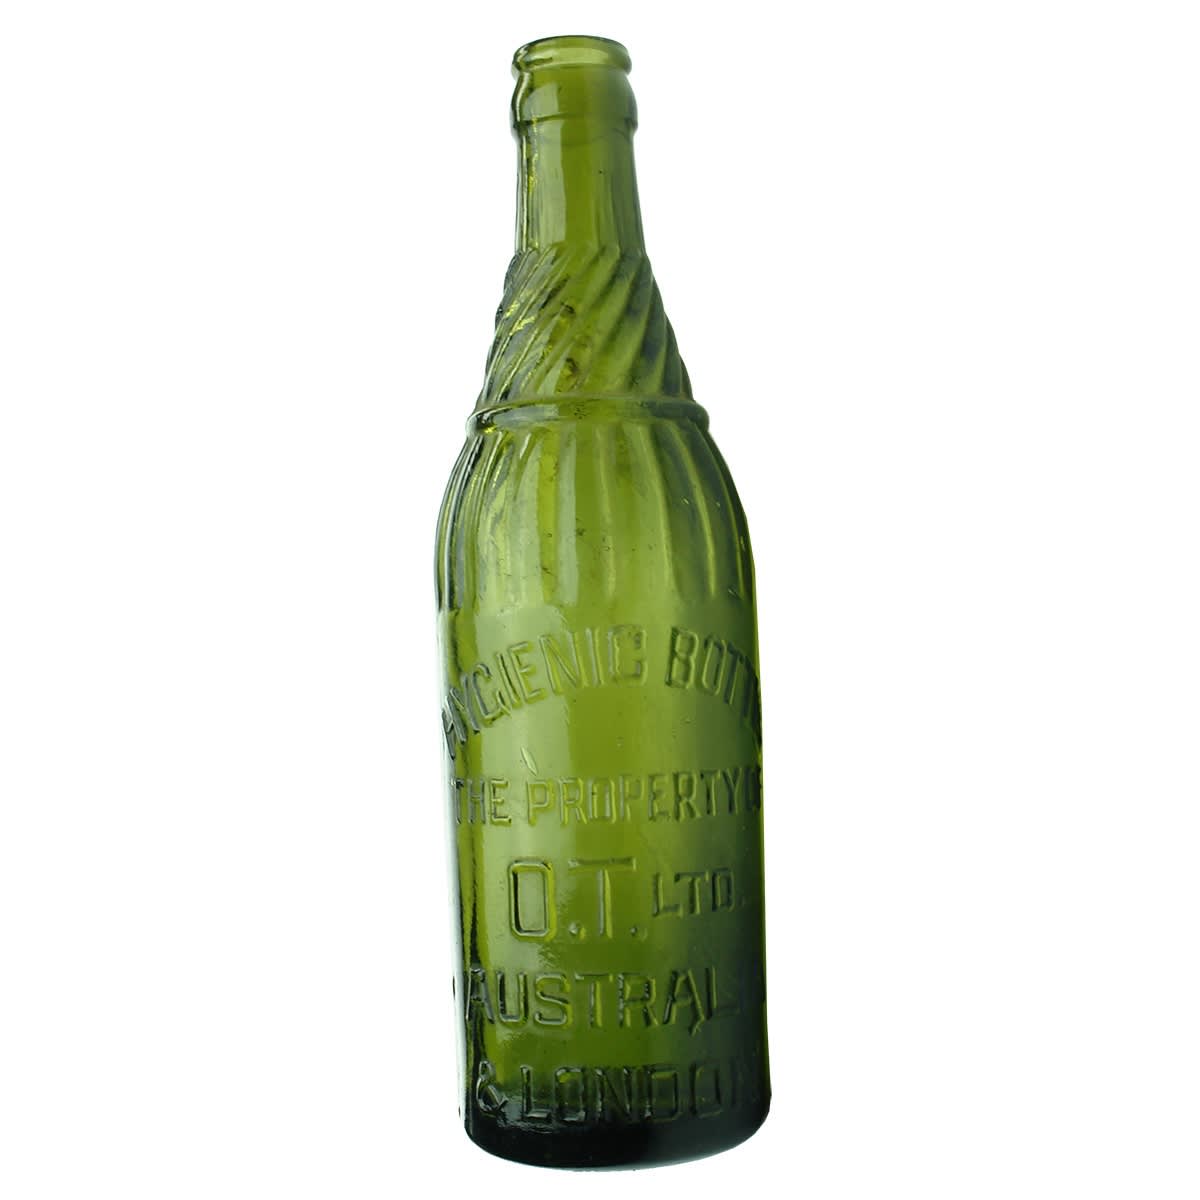 Crown Seal. OT Ltd. Australia & London. Hygienic Bottle. Green. 10 oz.